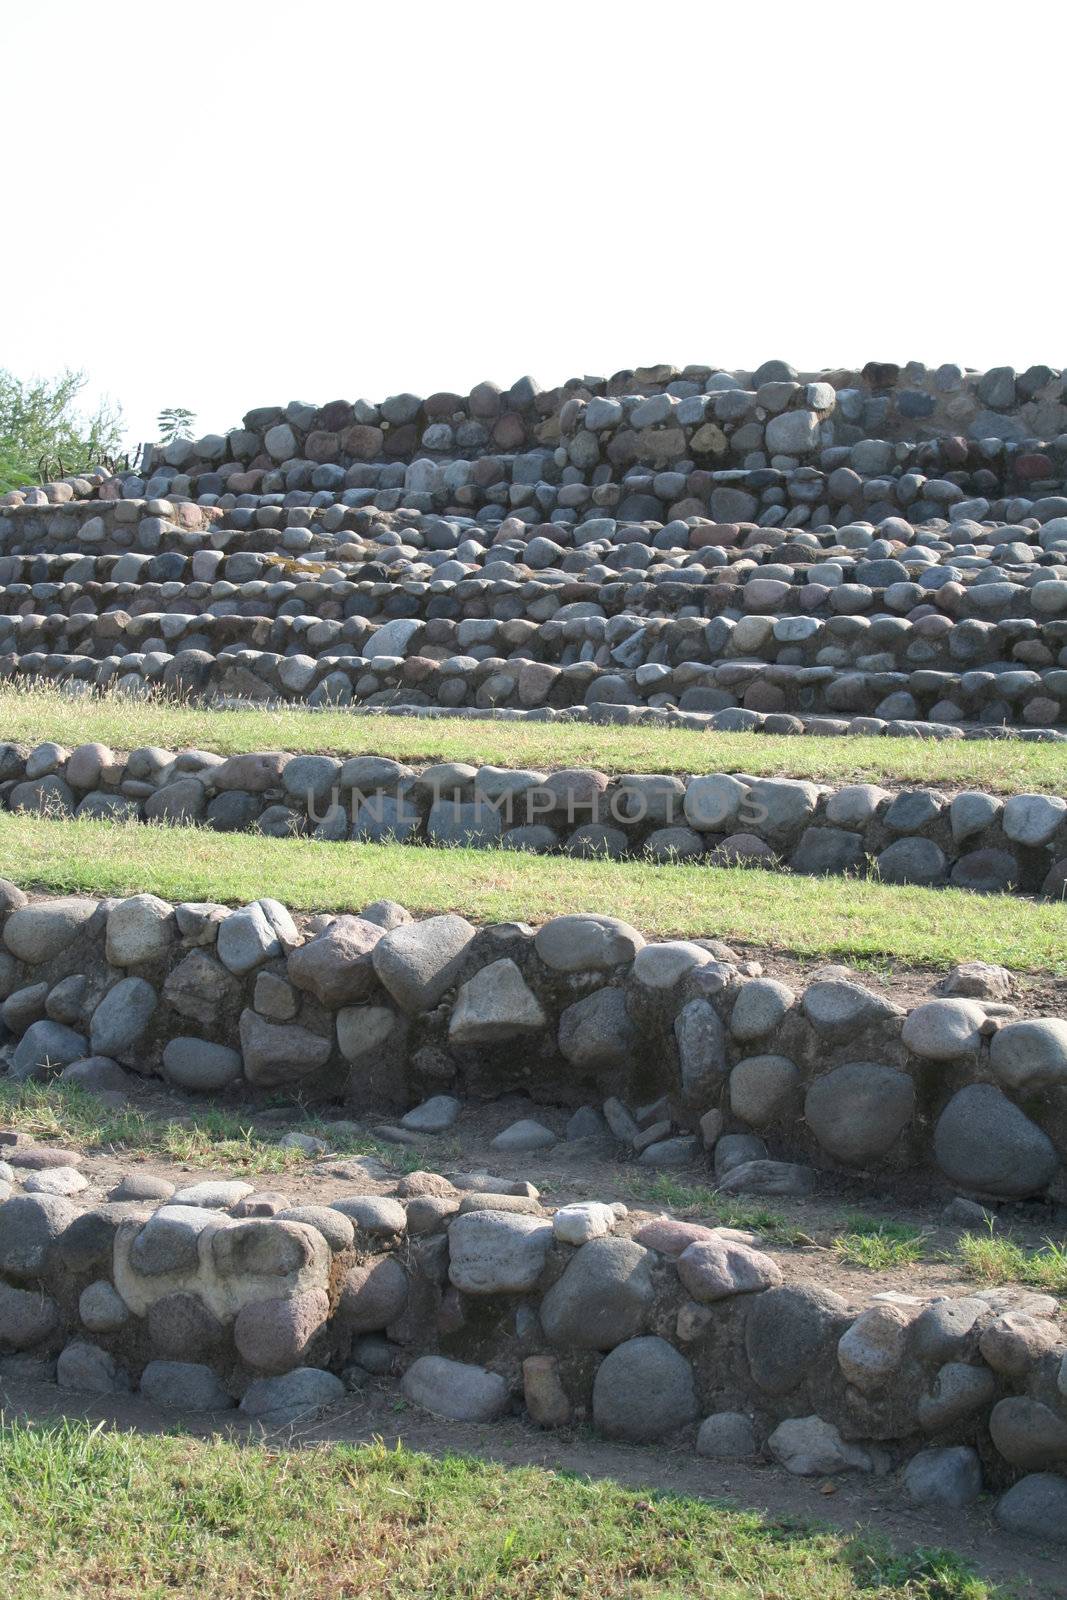 Mayan strone ruins